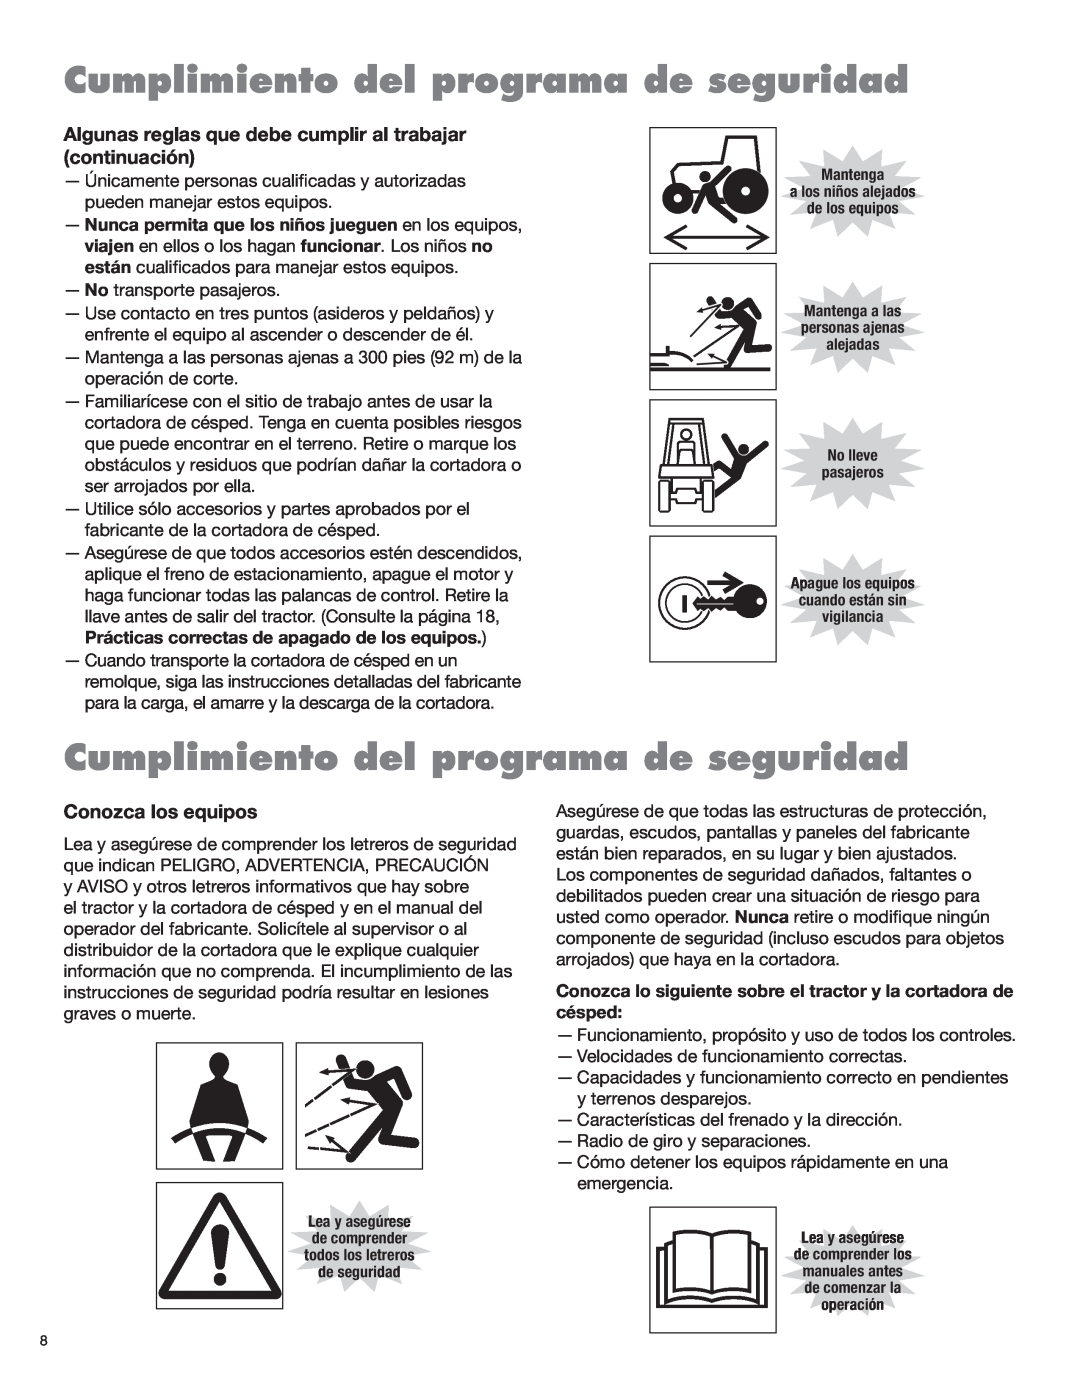 Servis-Rhino 2160 manual Cumplimiento del programa de seguridad, Algunas reglas que debe cumplir al trabajar continuación 